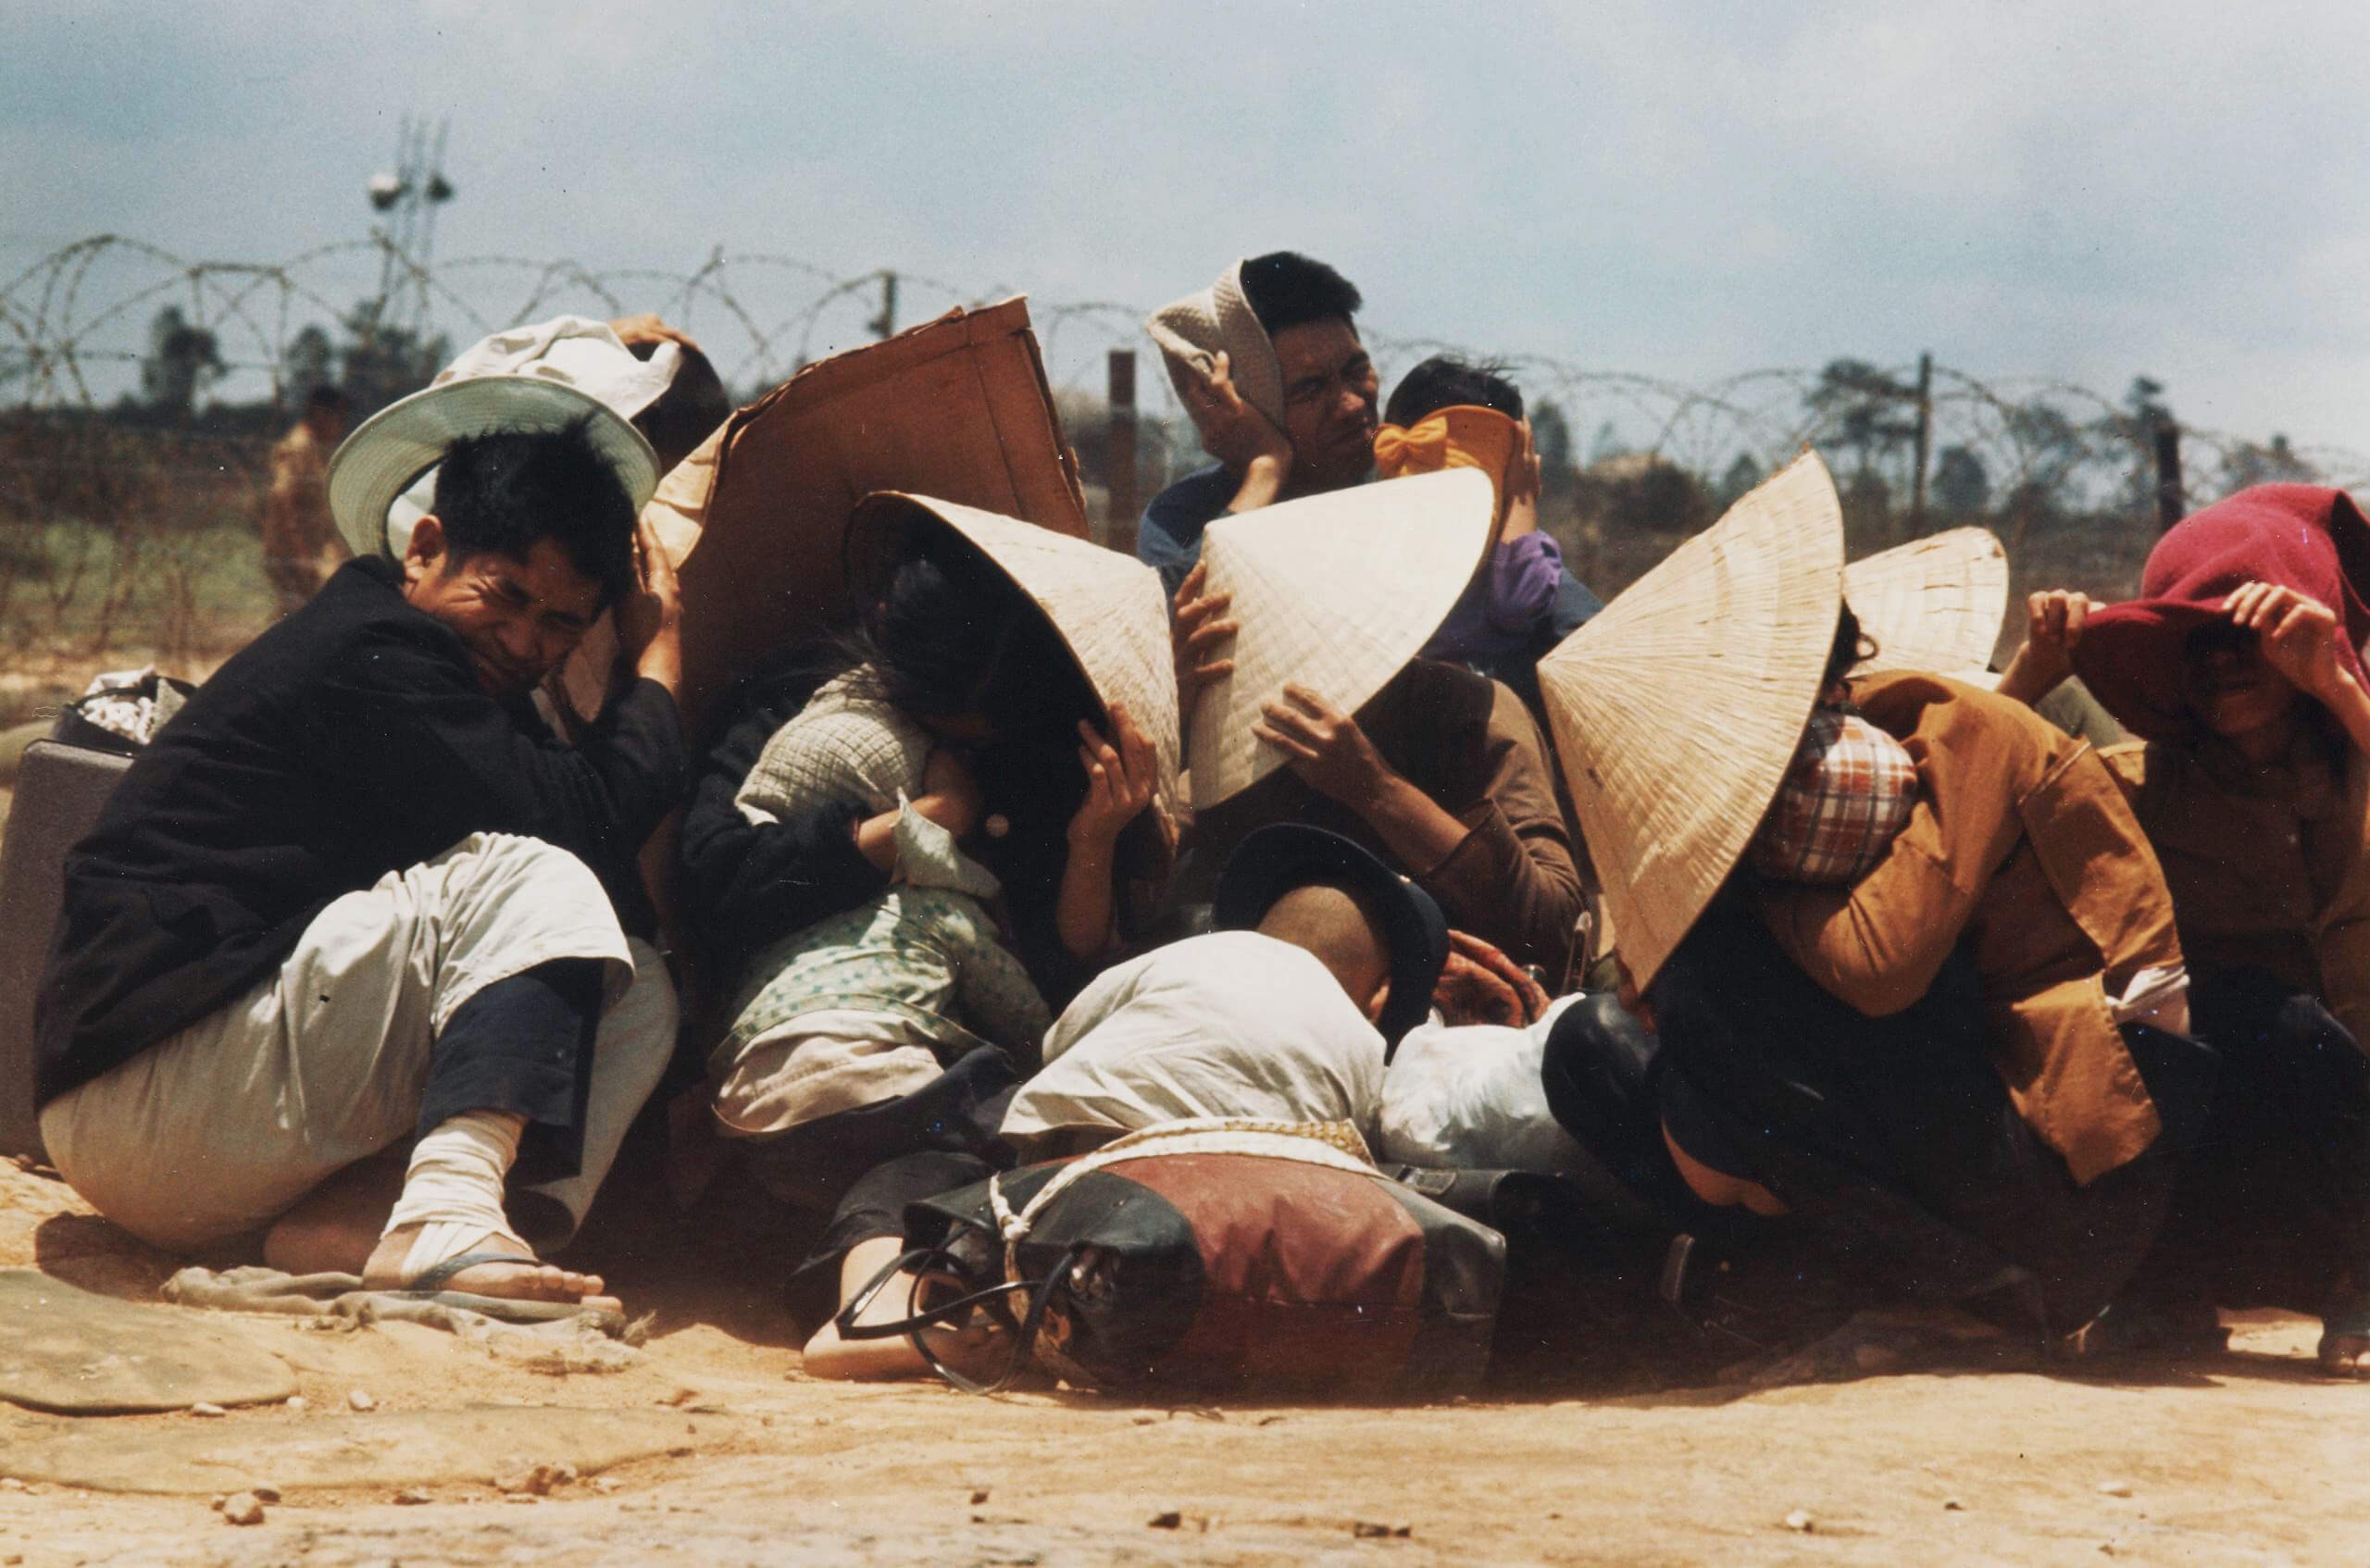 Zuid-Vietnamese burgers verschuilen zich tijdens de Vietnamoorlog, 1972. © Manhhai / Flickr